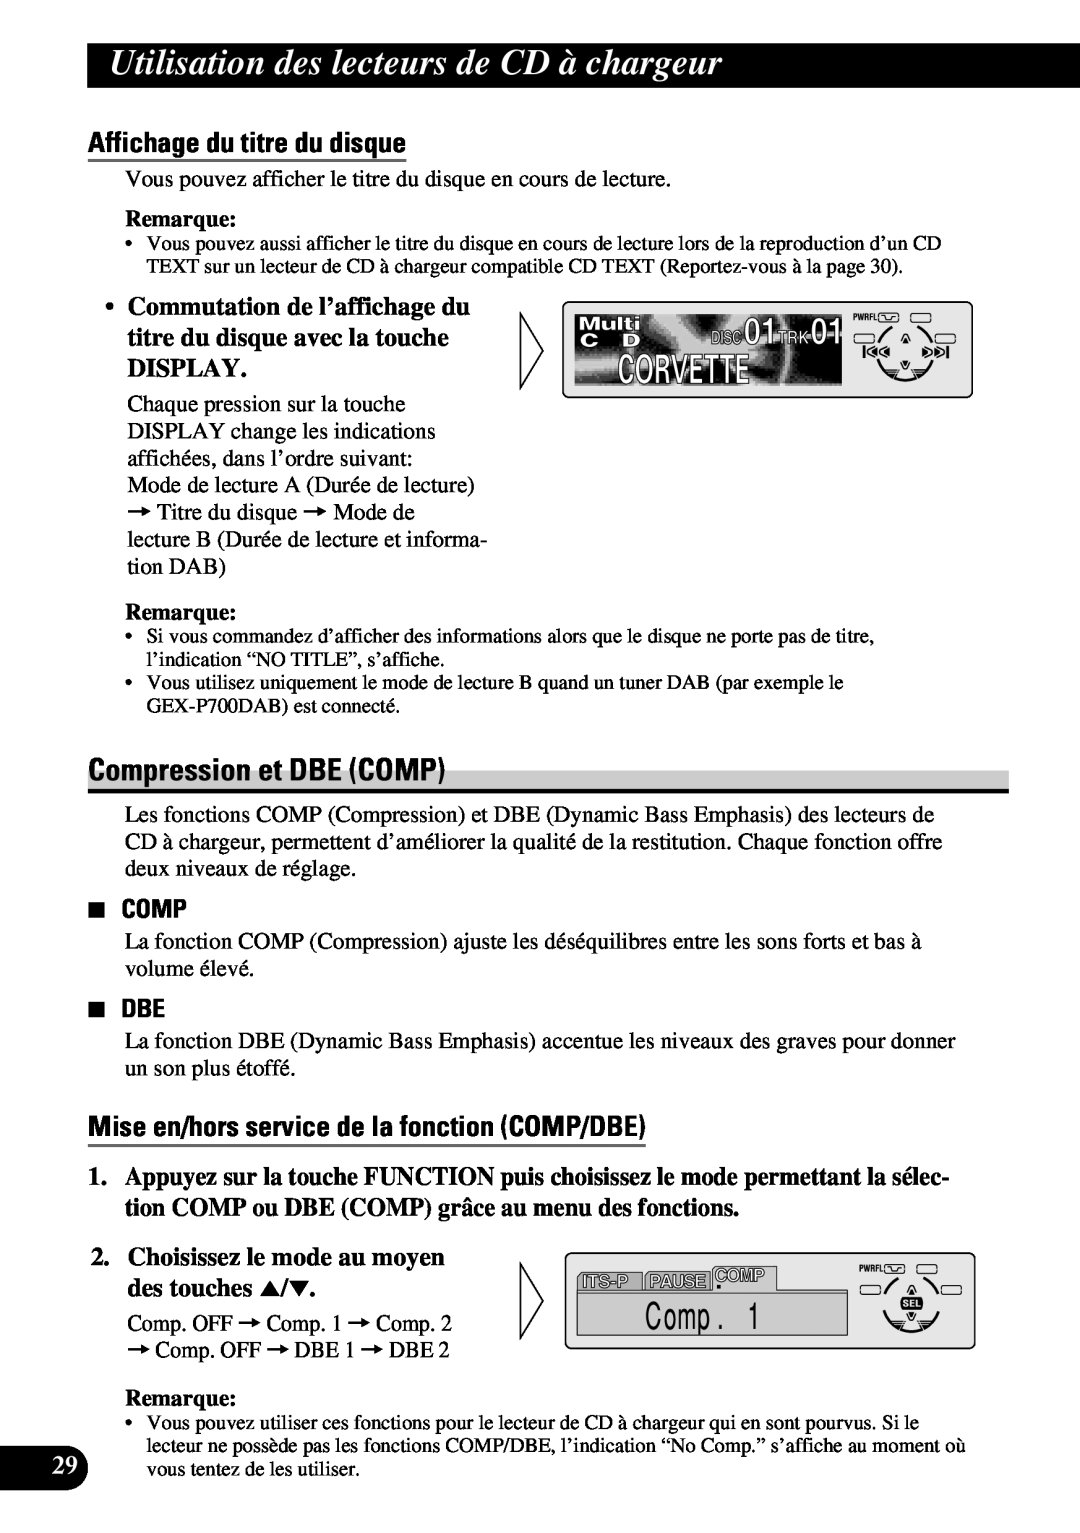 Pioneer DEH-P6300, DEH-P7300 operation manual Compression et DBE COMP, Affichage du titre du disque, 7 DBE, Remarque 